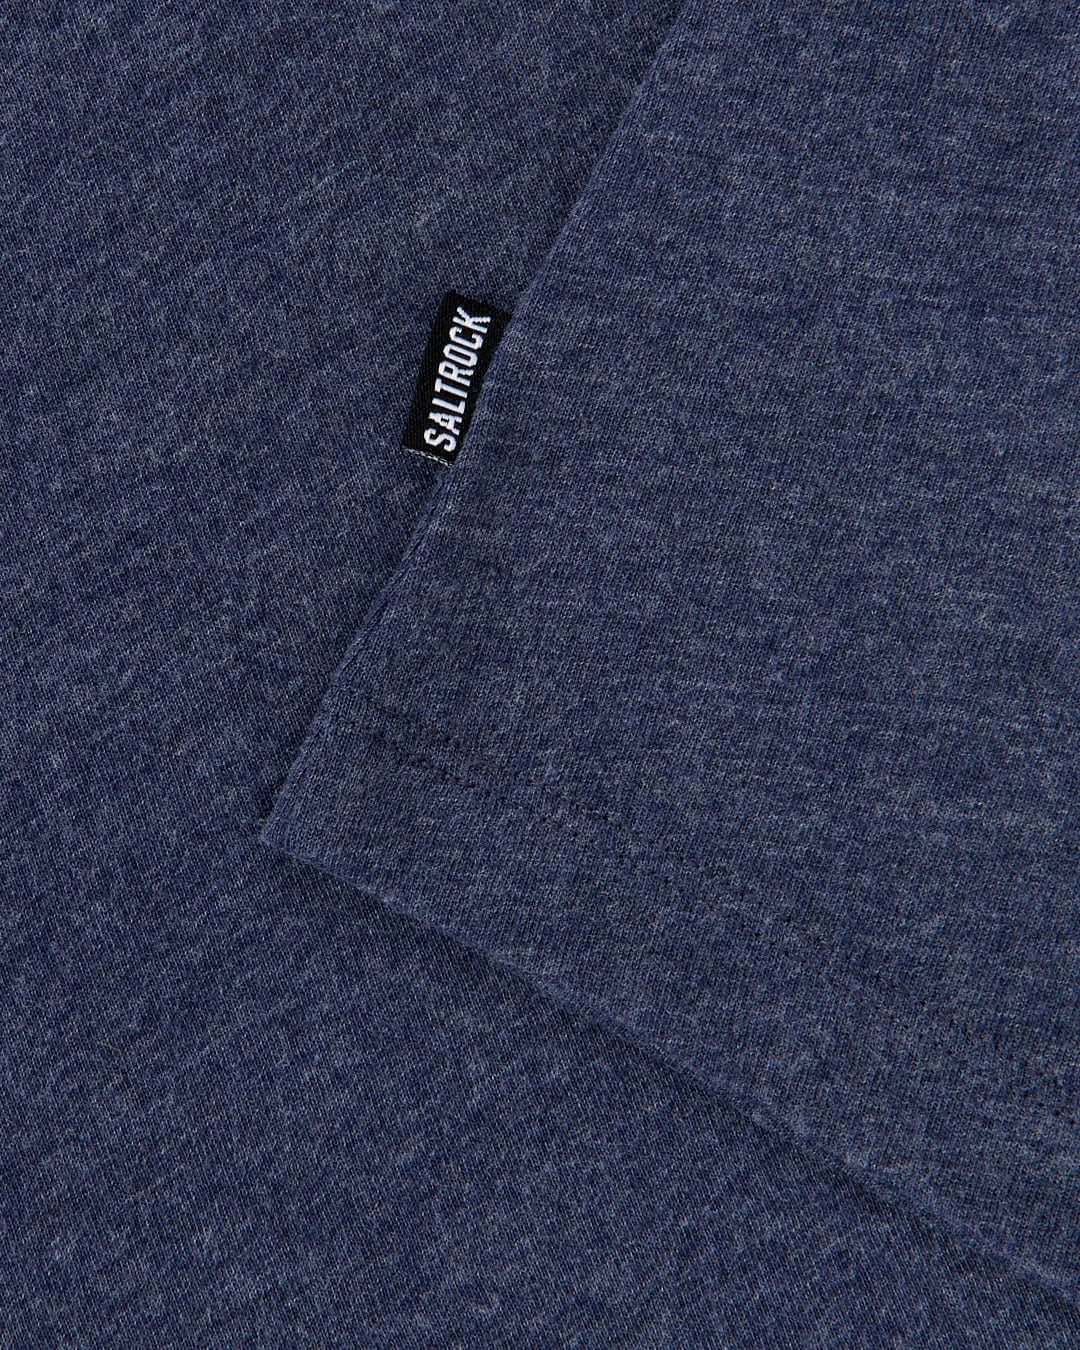 Women's short sleeve Velator tee from Saltrock in Blue Marl with side hem logo label.